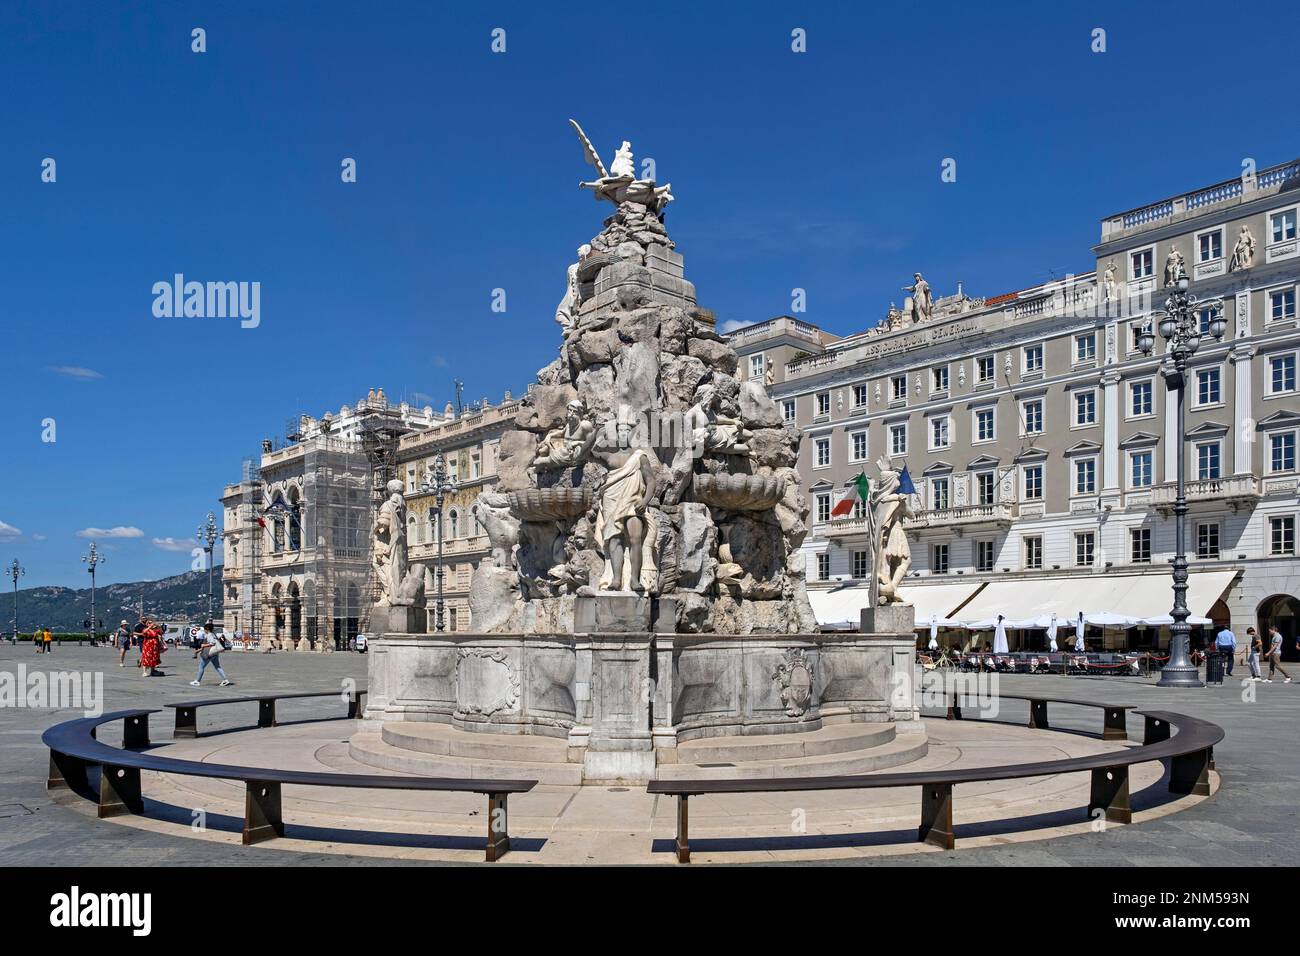 Fontana dei quattro continenti in Piazza Unità d'Italia / Piazza dell'unità d'Italia nel centro di Trieste, Friuli Venezia Giulia, Italia settentrionale Foto Stock